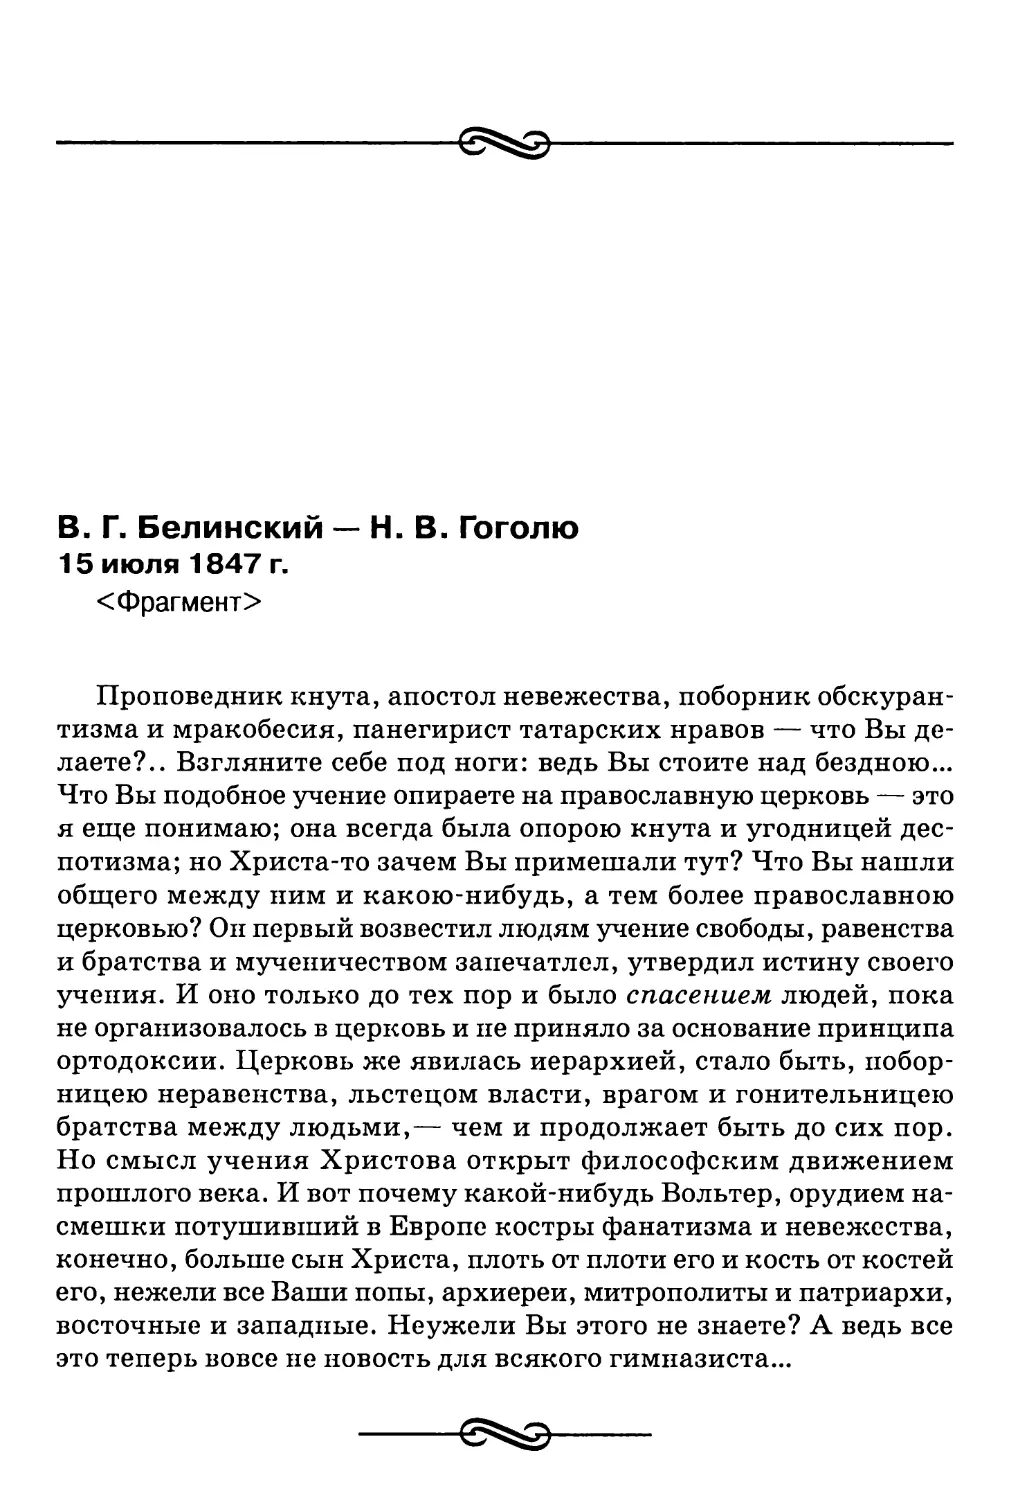 В.Г. Белинский — H.B. Гоголю. 15 июля 1847 г. <Фрагмент>